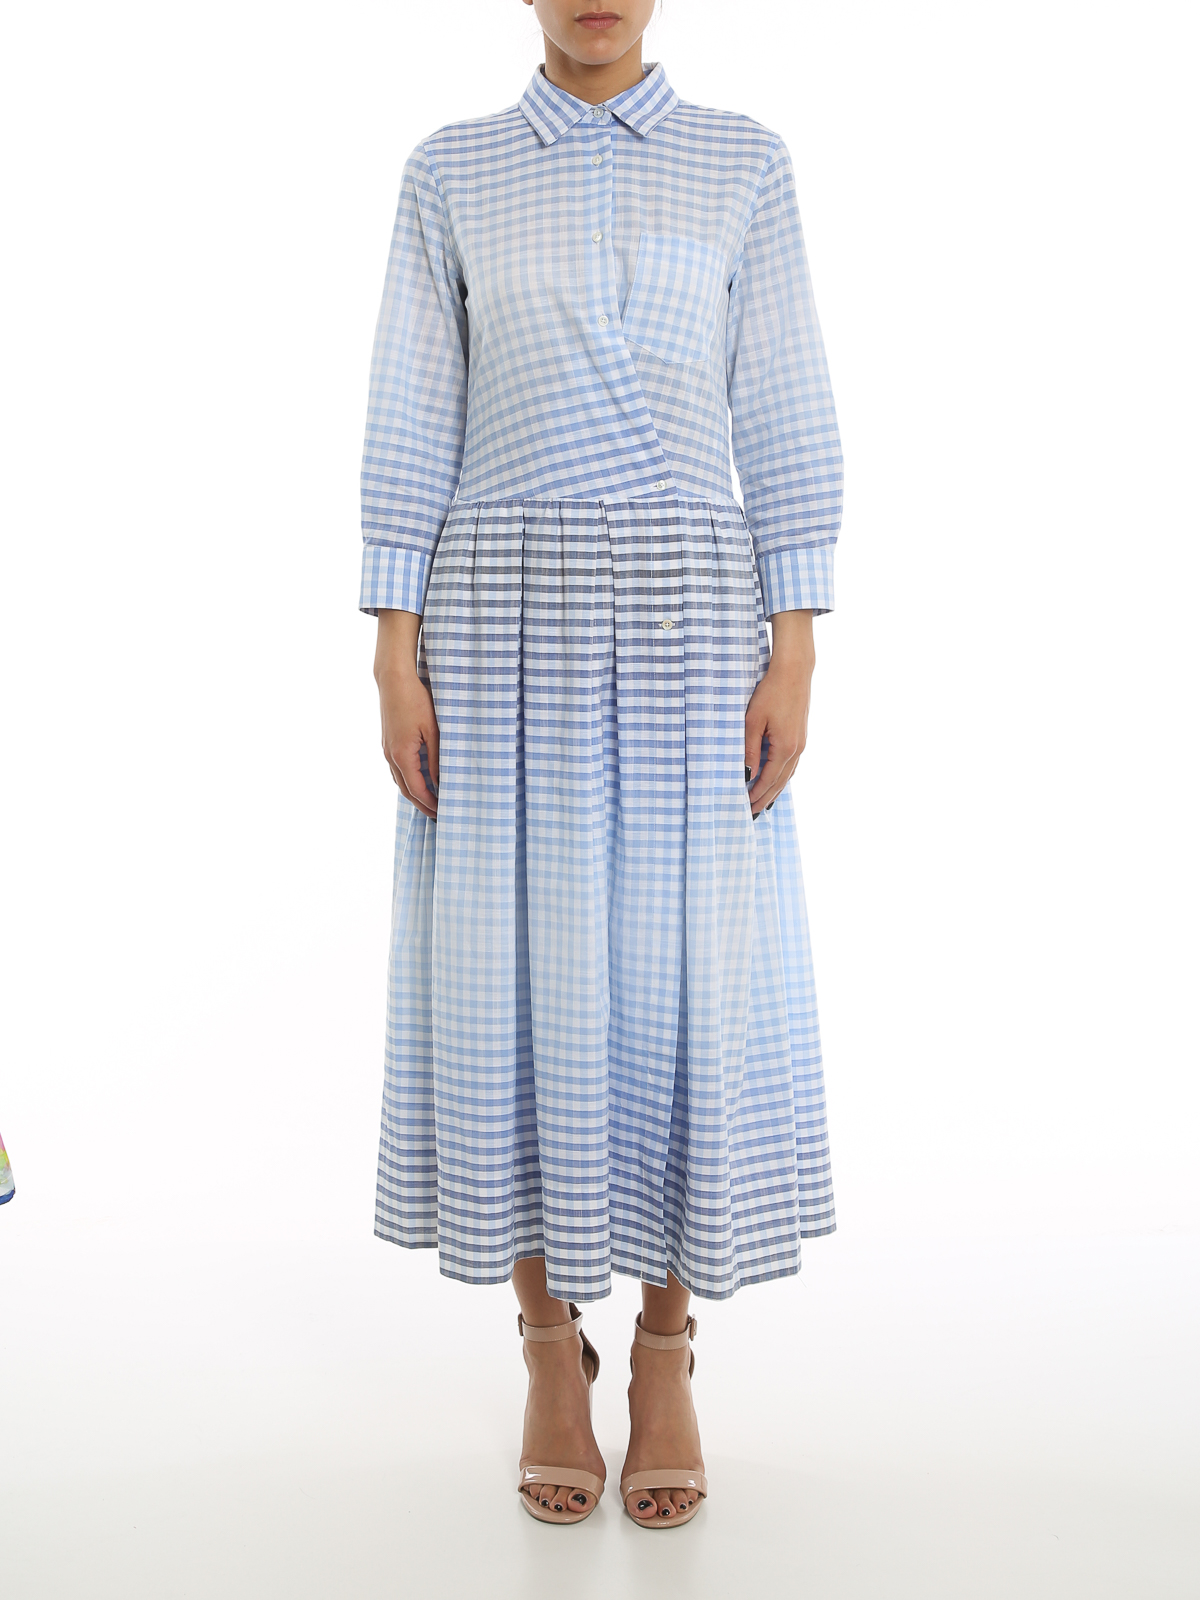 Maxi dresses Sara Roka - Elena dress - ELENAT8001 | Shop online at iKRIX